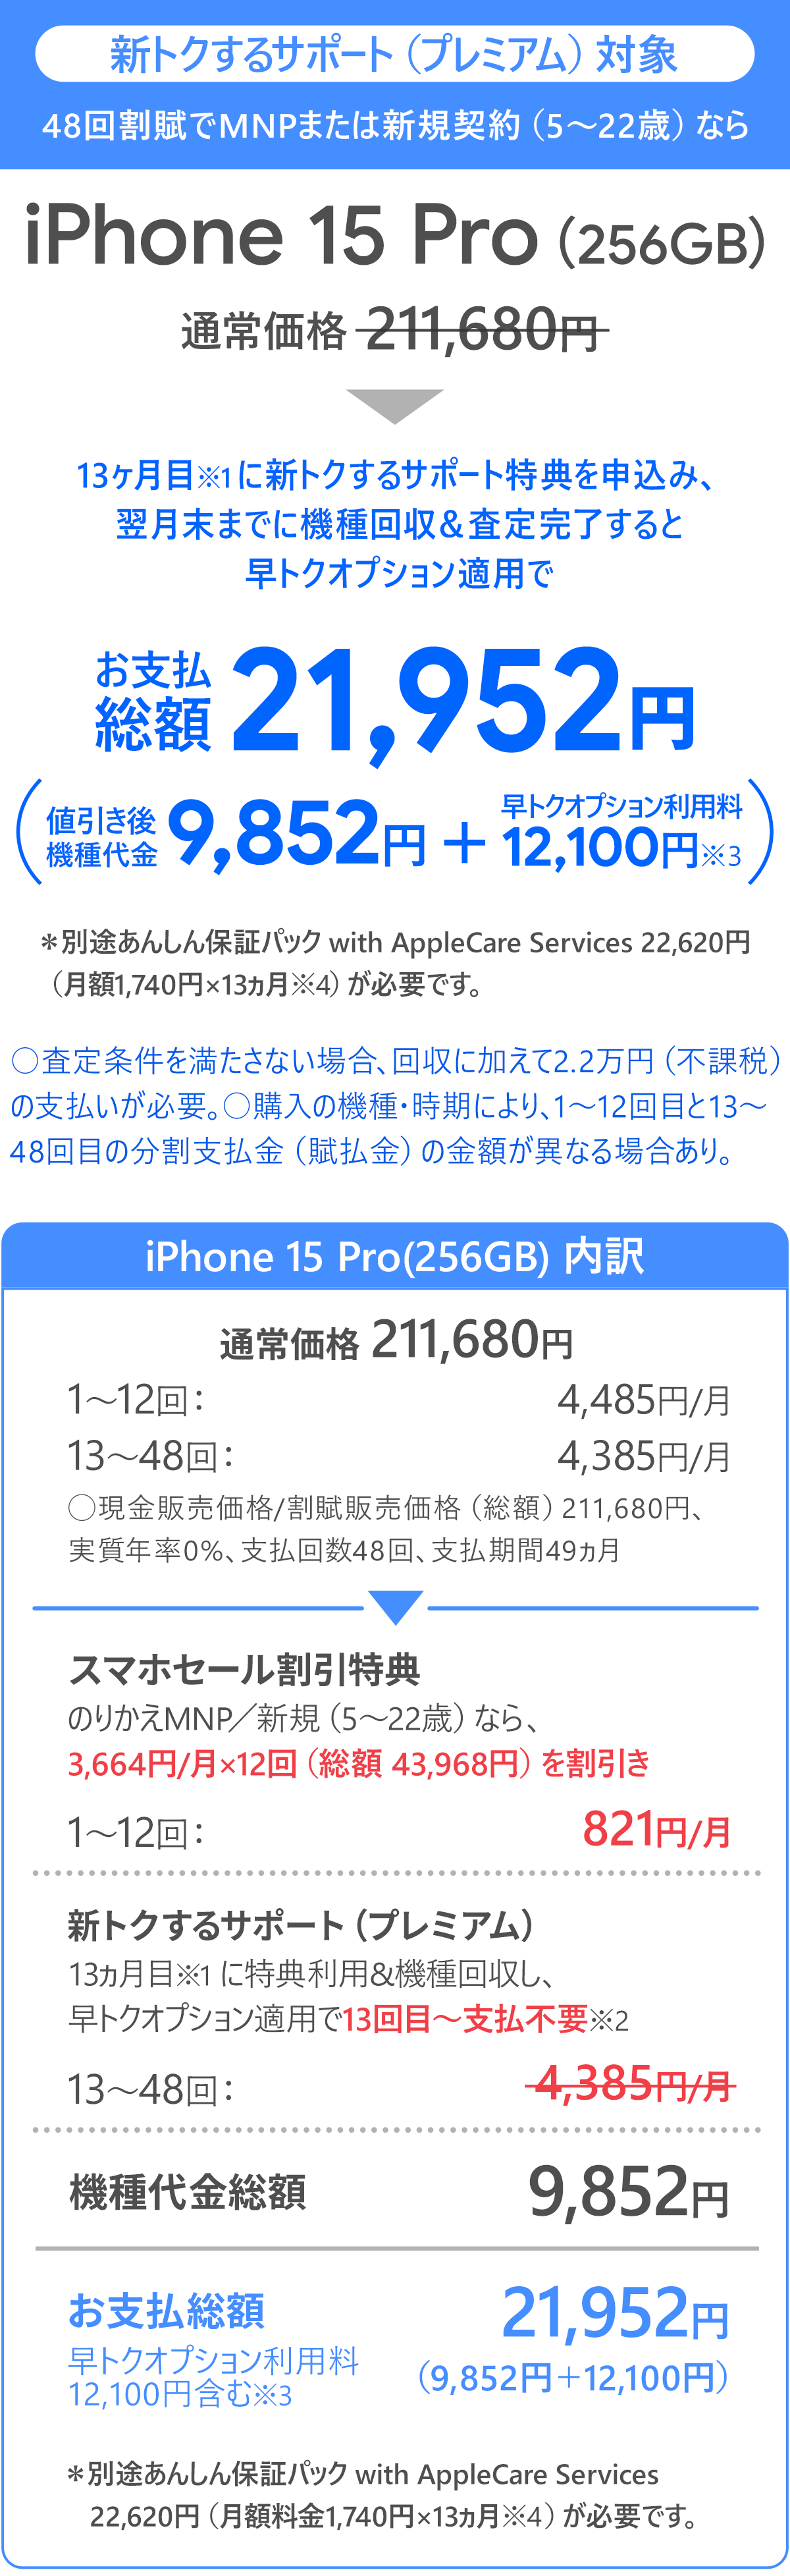 ソフトバンク「iPhone 15 Pro 256GB」大セール